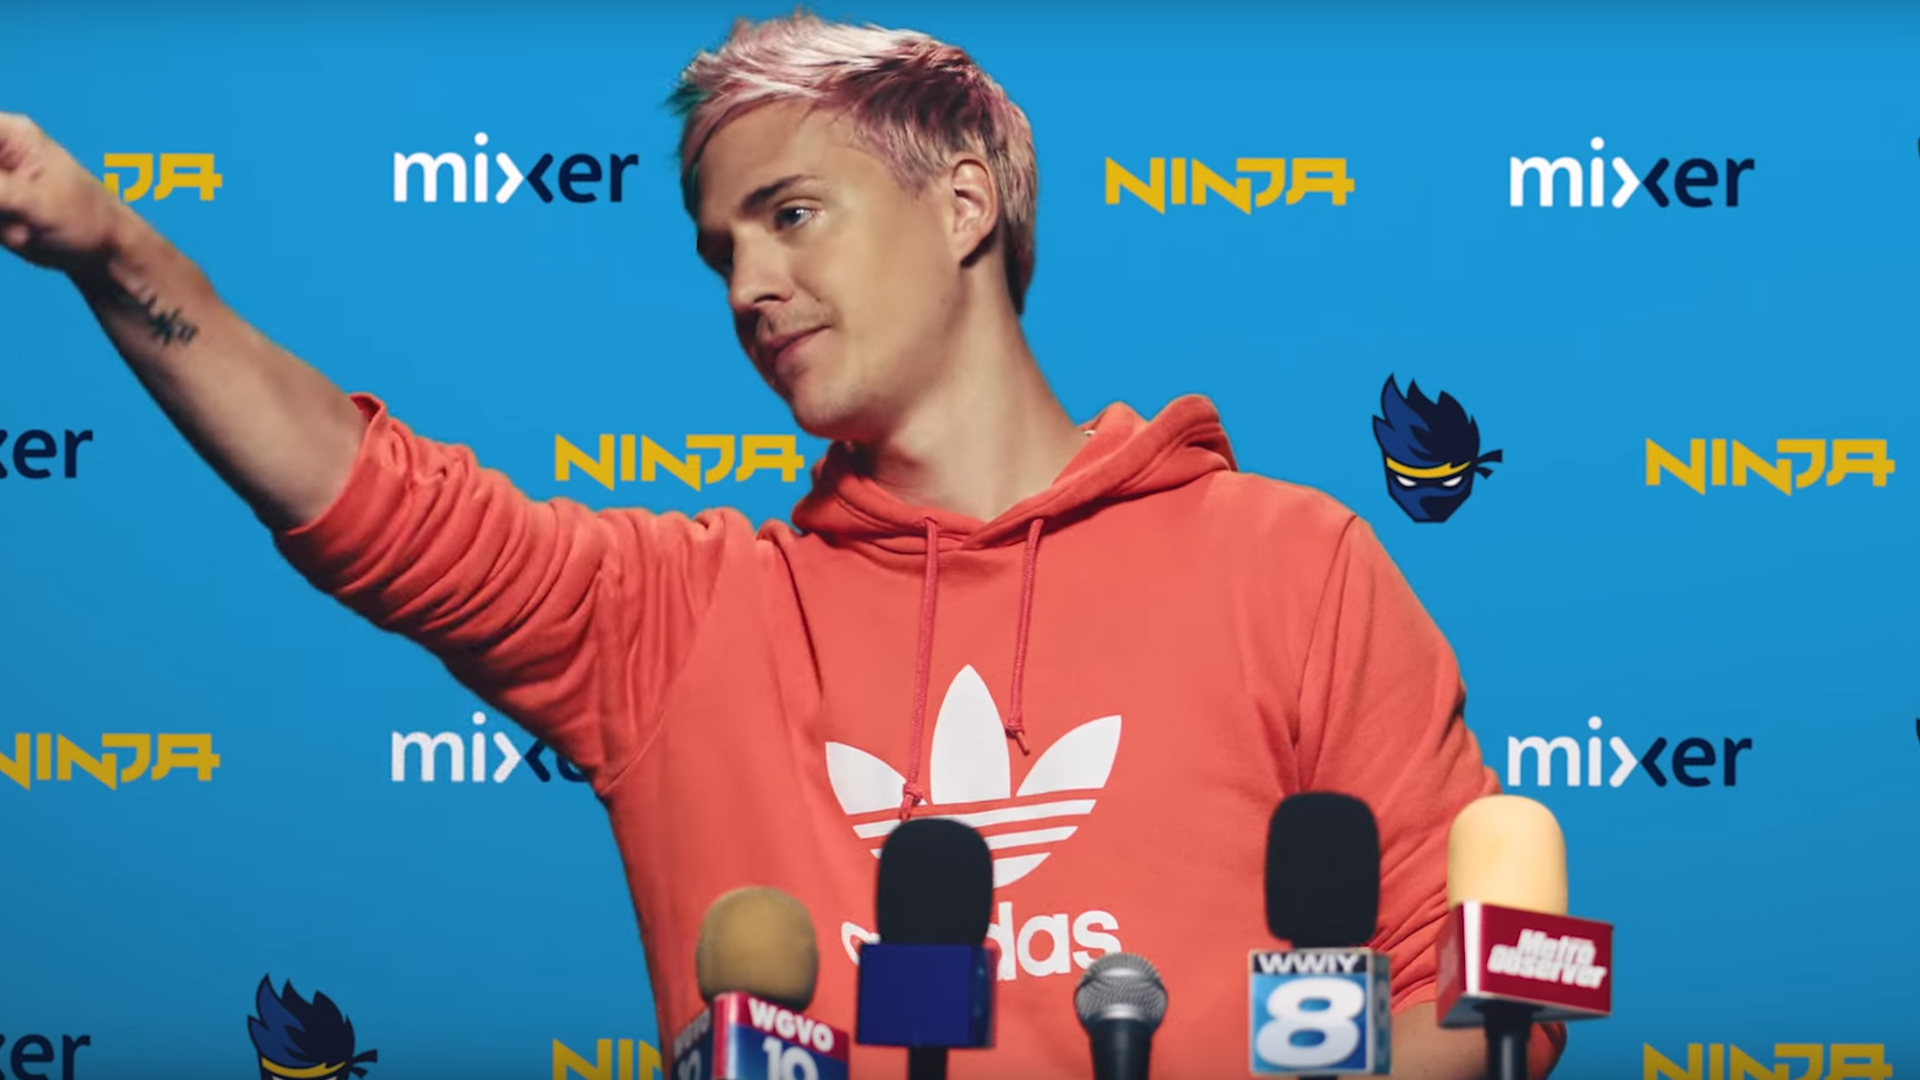 Mixer memuncaki daftar aplikasi gratis setelah Ninja pindah dari Twitch